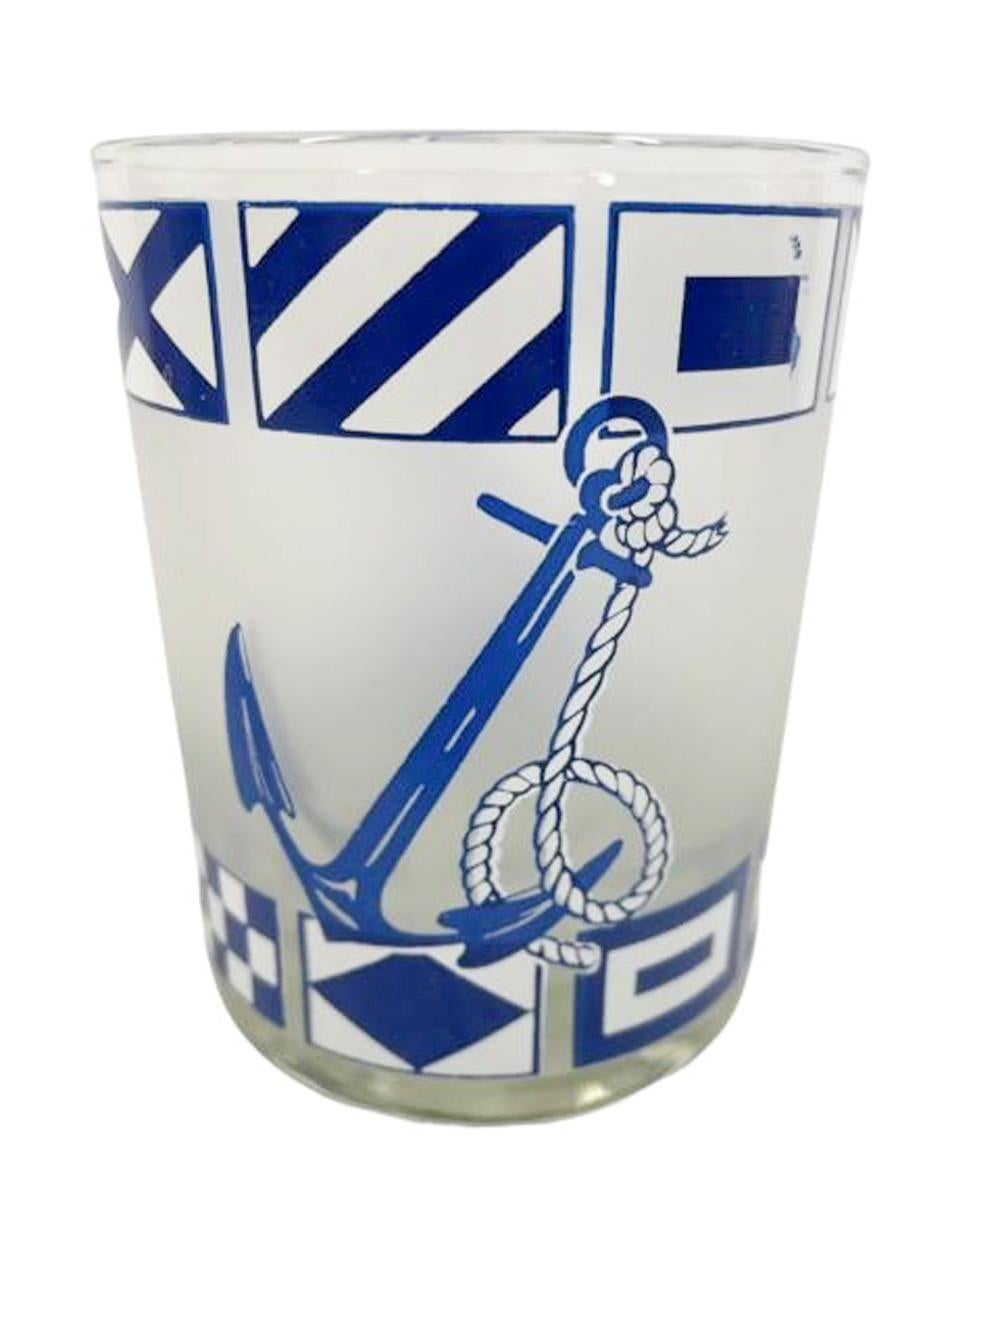 Six verres à pied du milieu du siècle, décorés en bleu et blanc avec de grandes ancres entre deux bandes de drapeaux nautiques, le tout sur un fond givré.